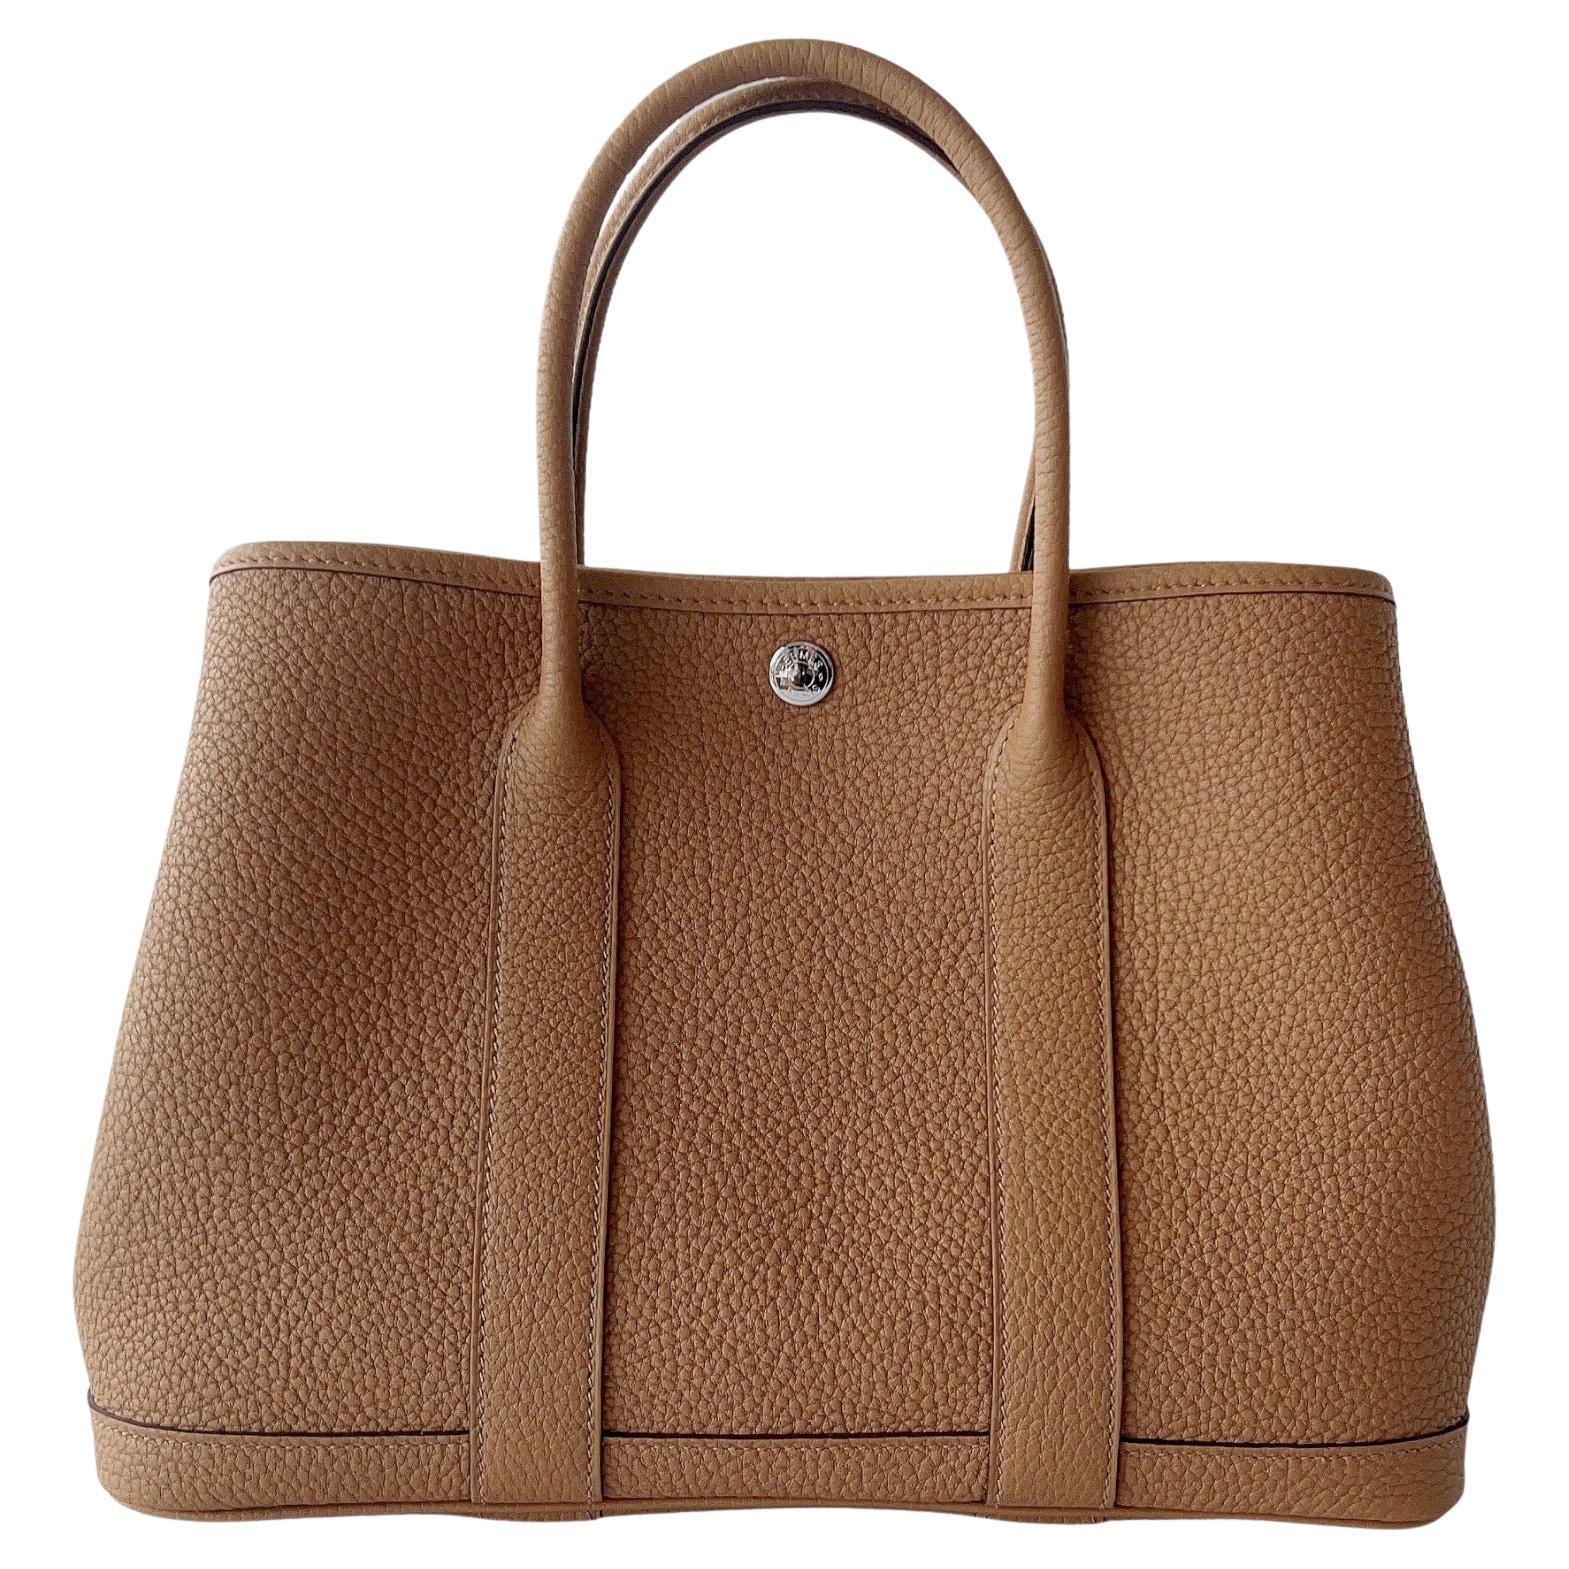 Hermès Garden Party 30 Bag In Biscuit Negonda Leather, Palladium Hardware